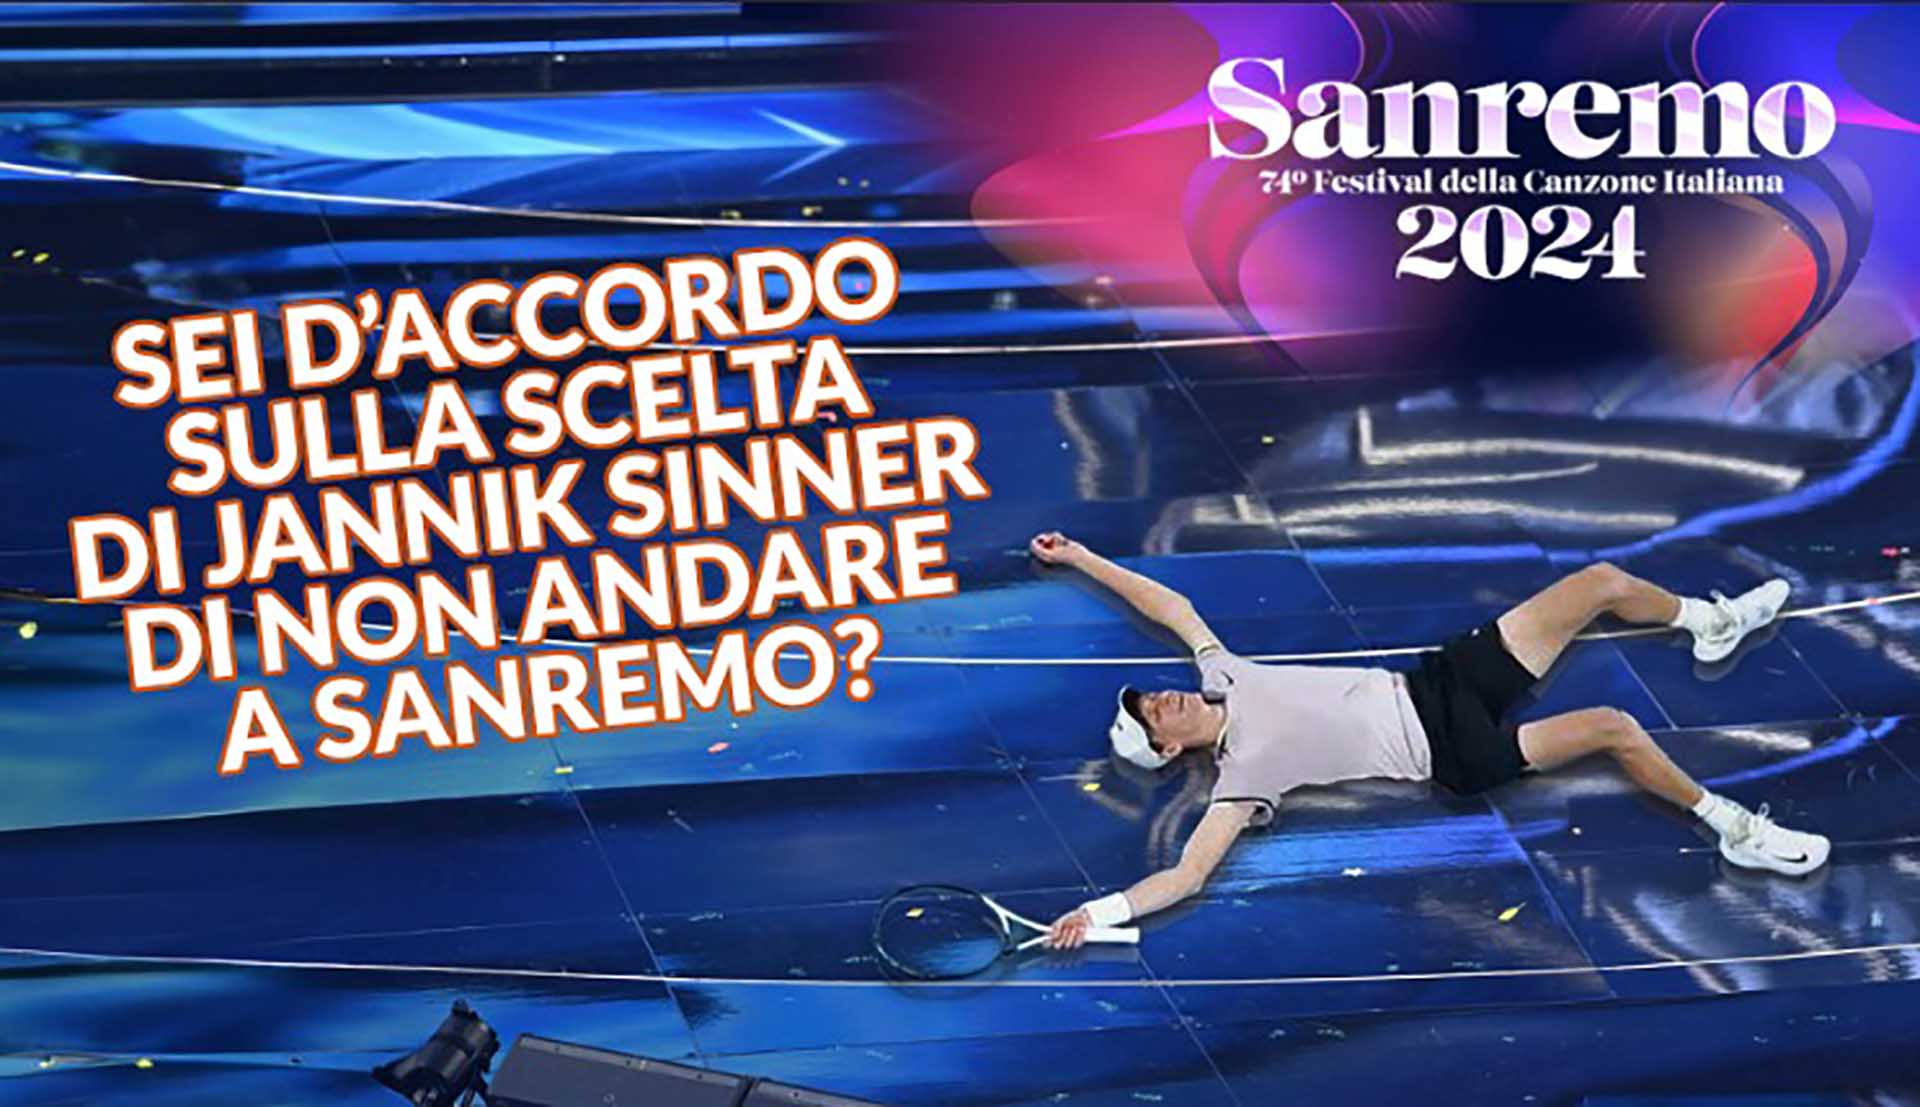 Sei d’accordo sulla scelta di Jannik Sinner di non andare a Sanremo?